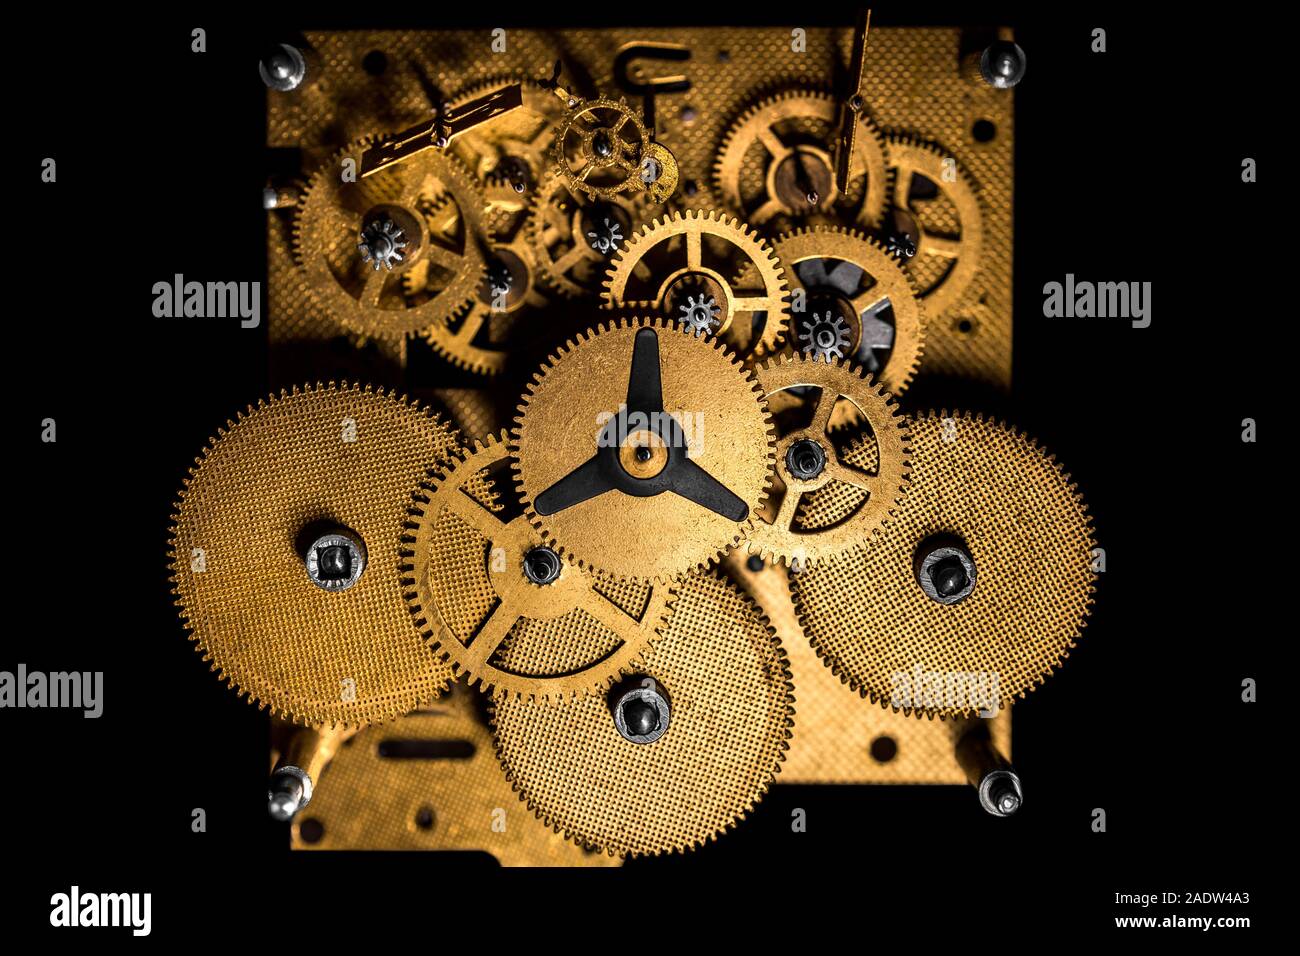 Topview, Innenansicht eines mechanischen Uhrwerk oder Bewegung, schwarzer Hintergrund Stockfoto